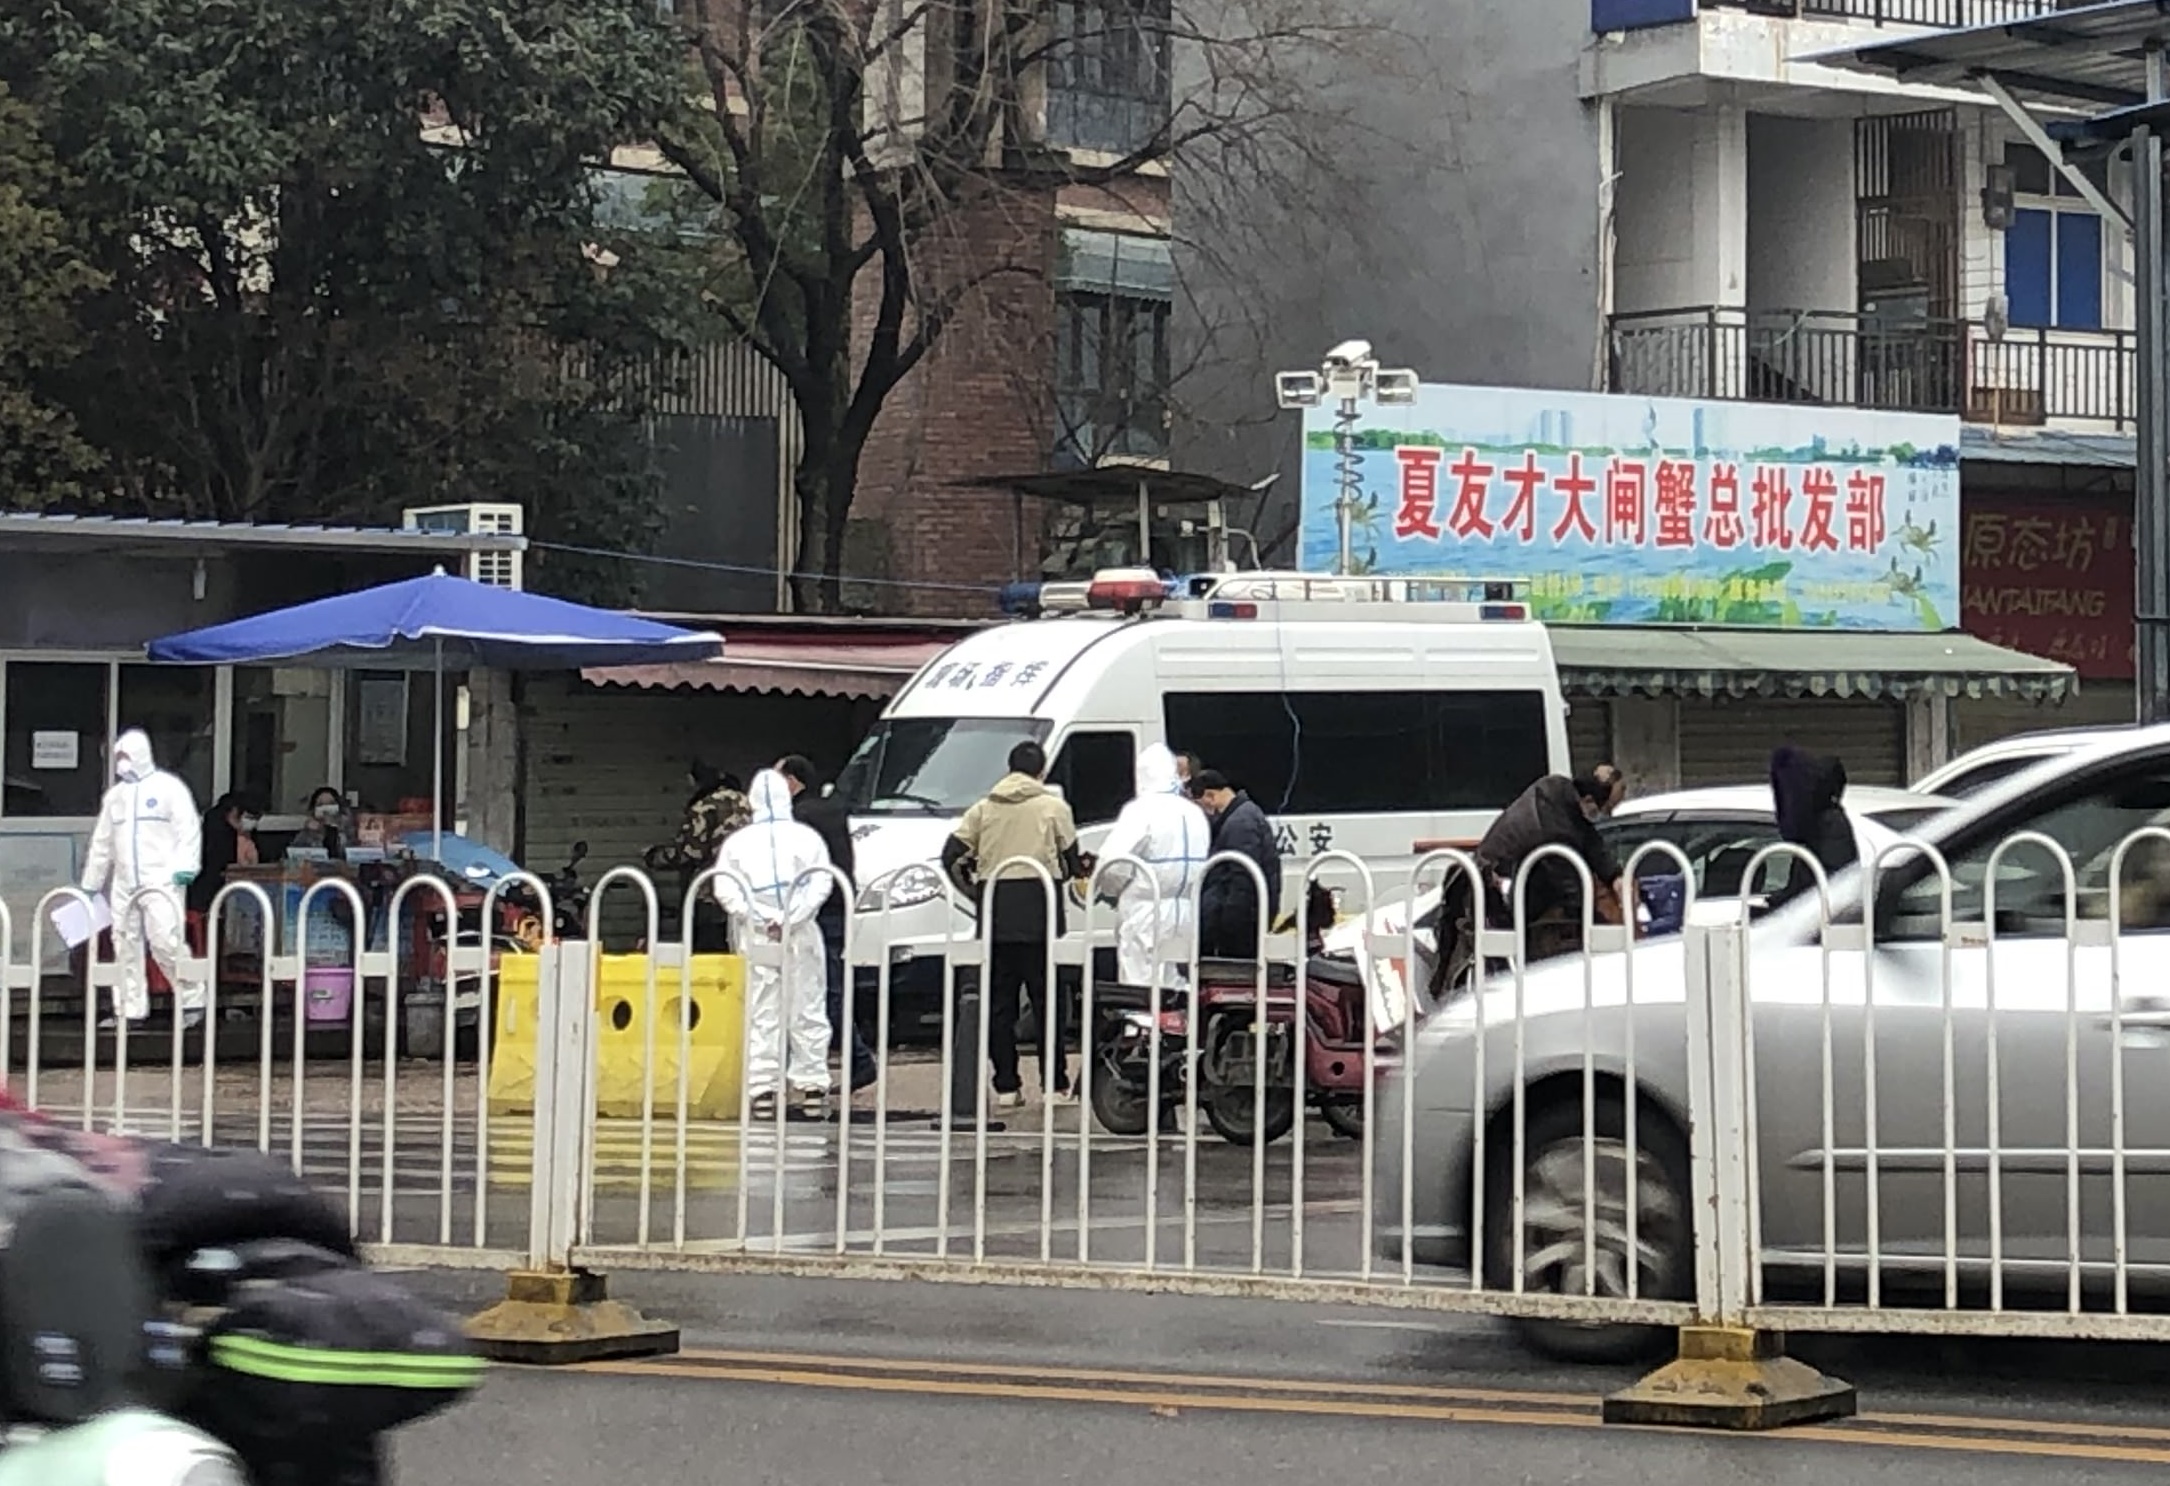 신종 코로나바이러스 발생지 중국 우한 화난시장